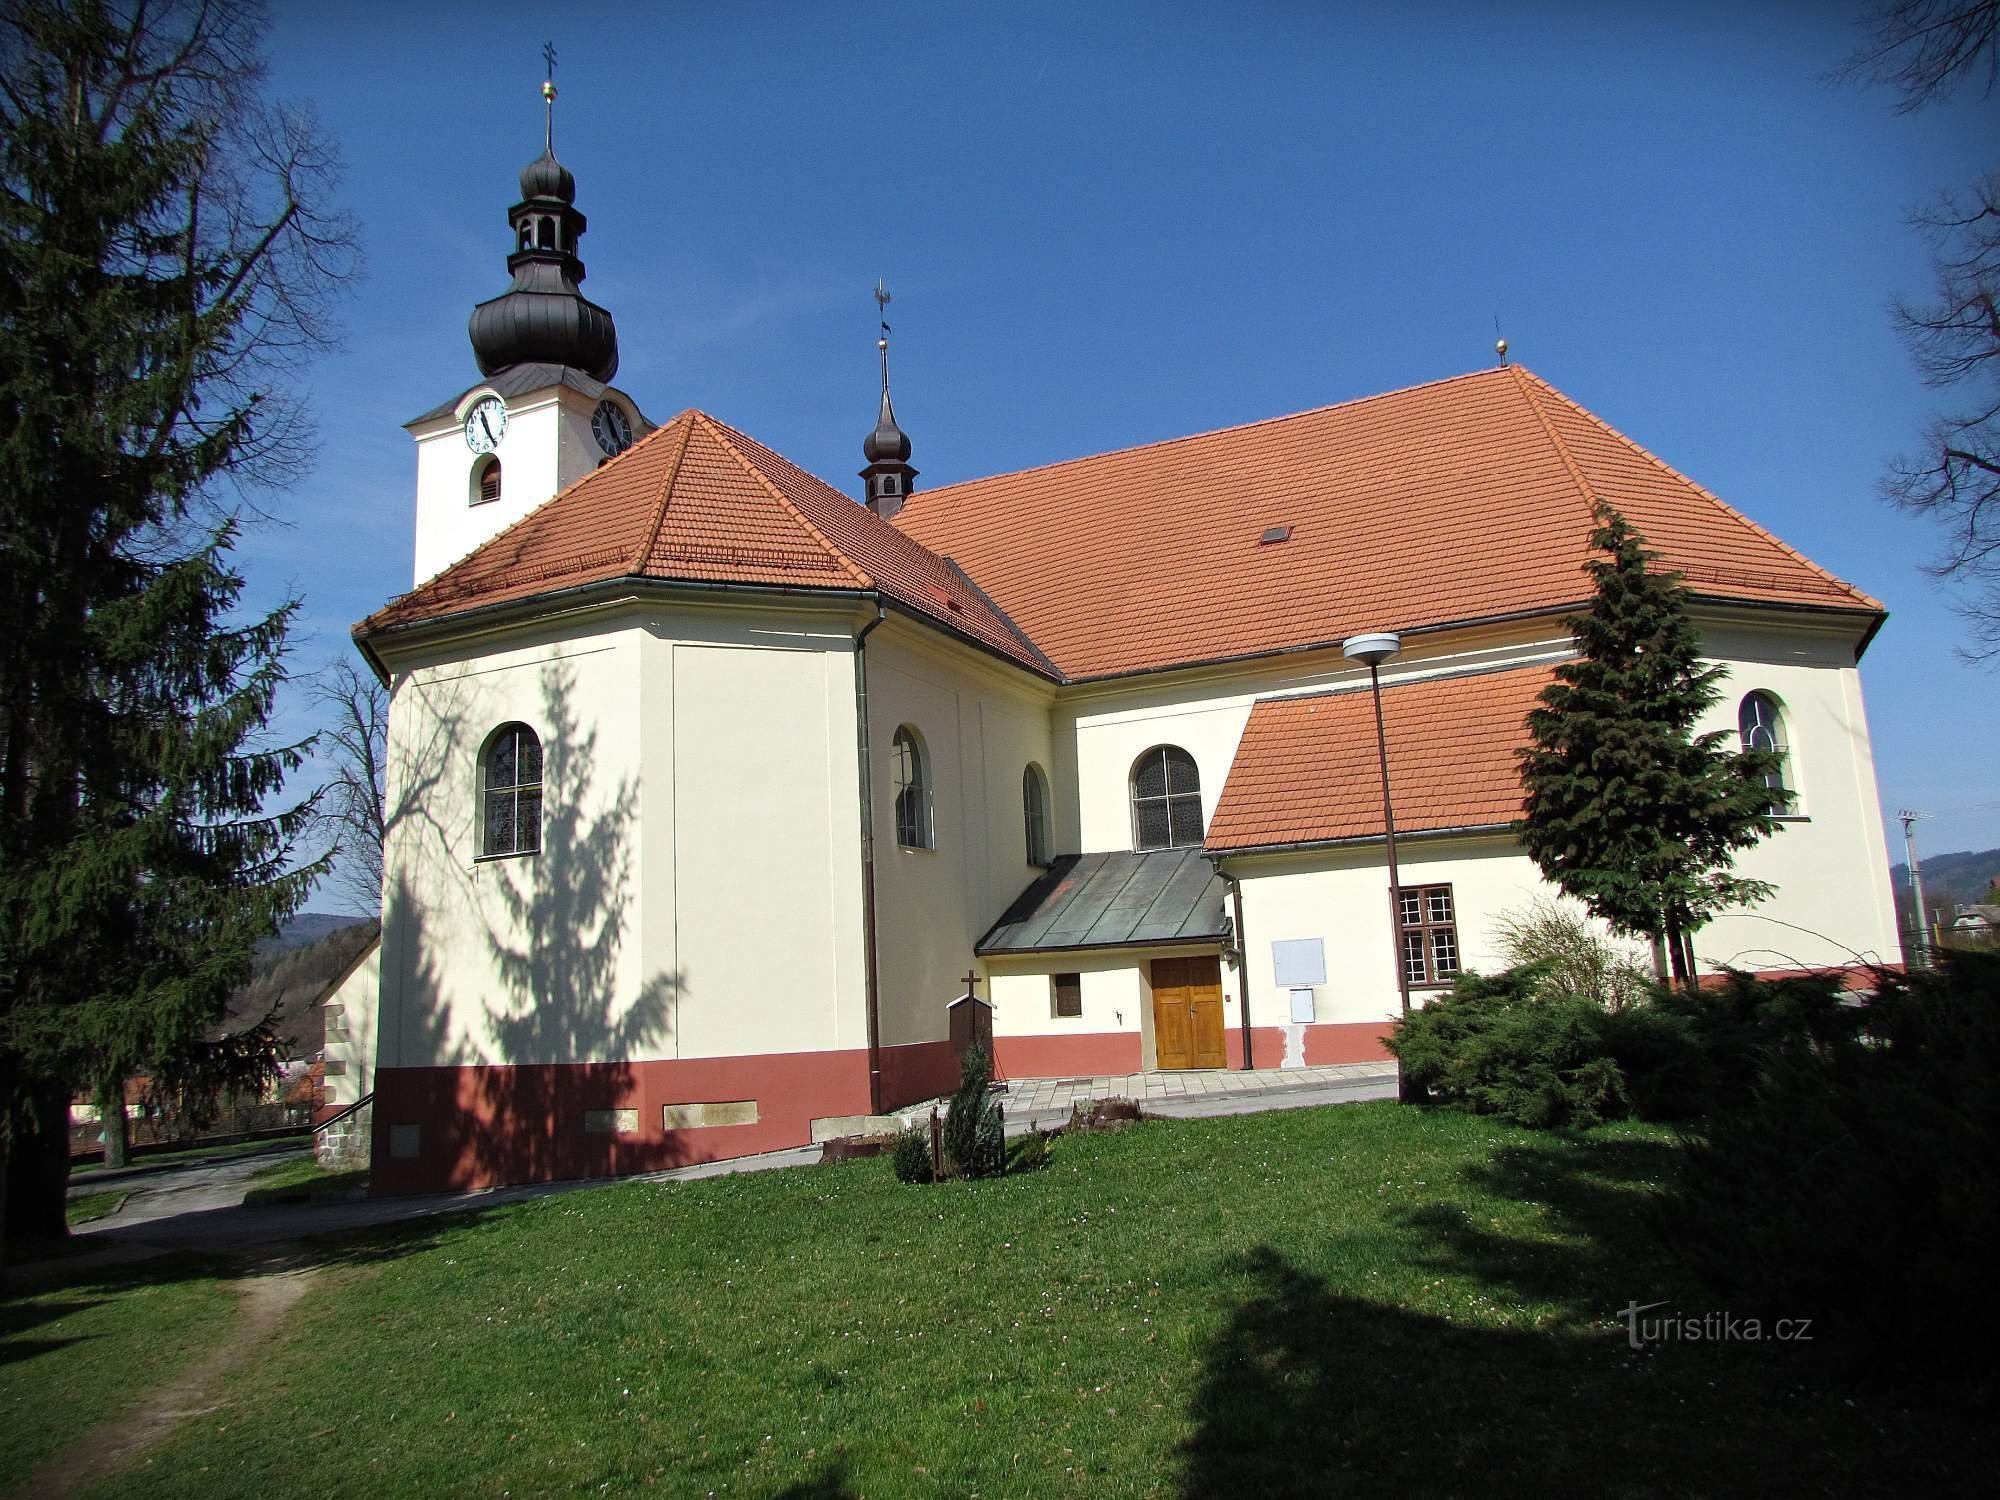 St. Wenceslas' Church in Brum